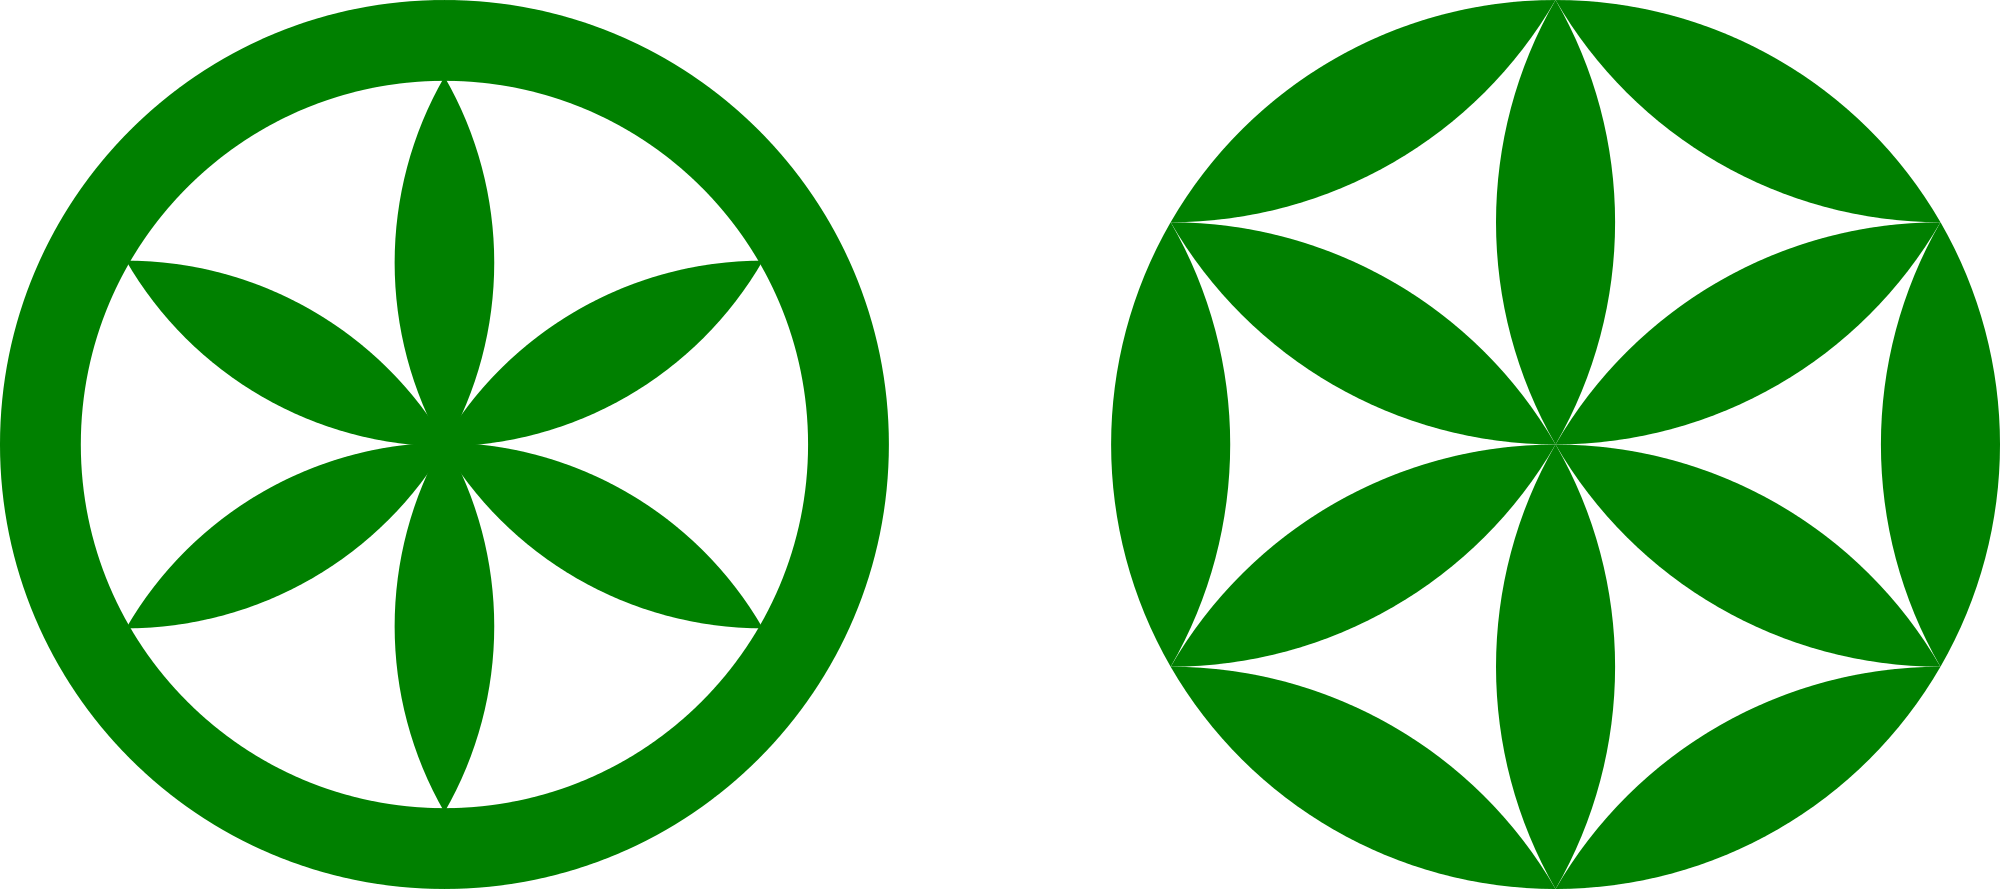 Green Flower Shape of Logo - File:Sun of the Alps vs Flower of Life rosette shape.svg - Wikimedia ...